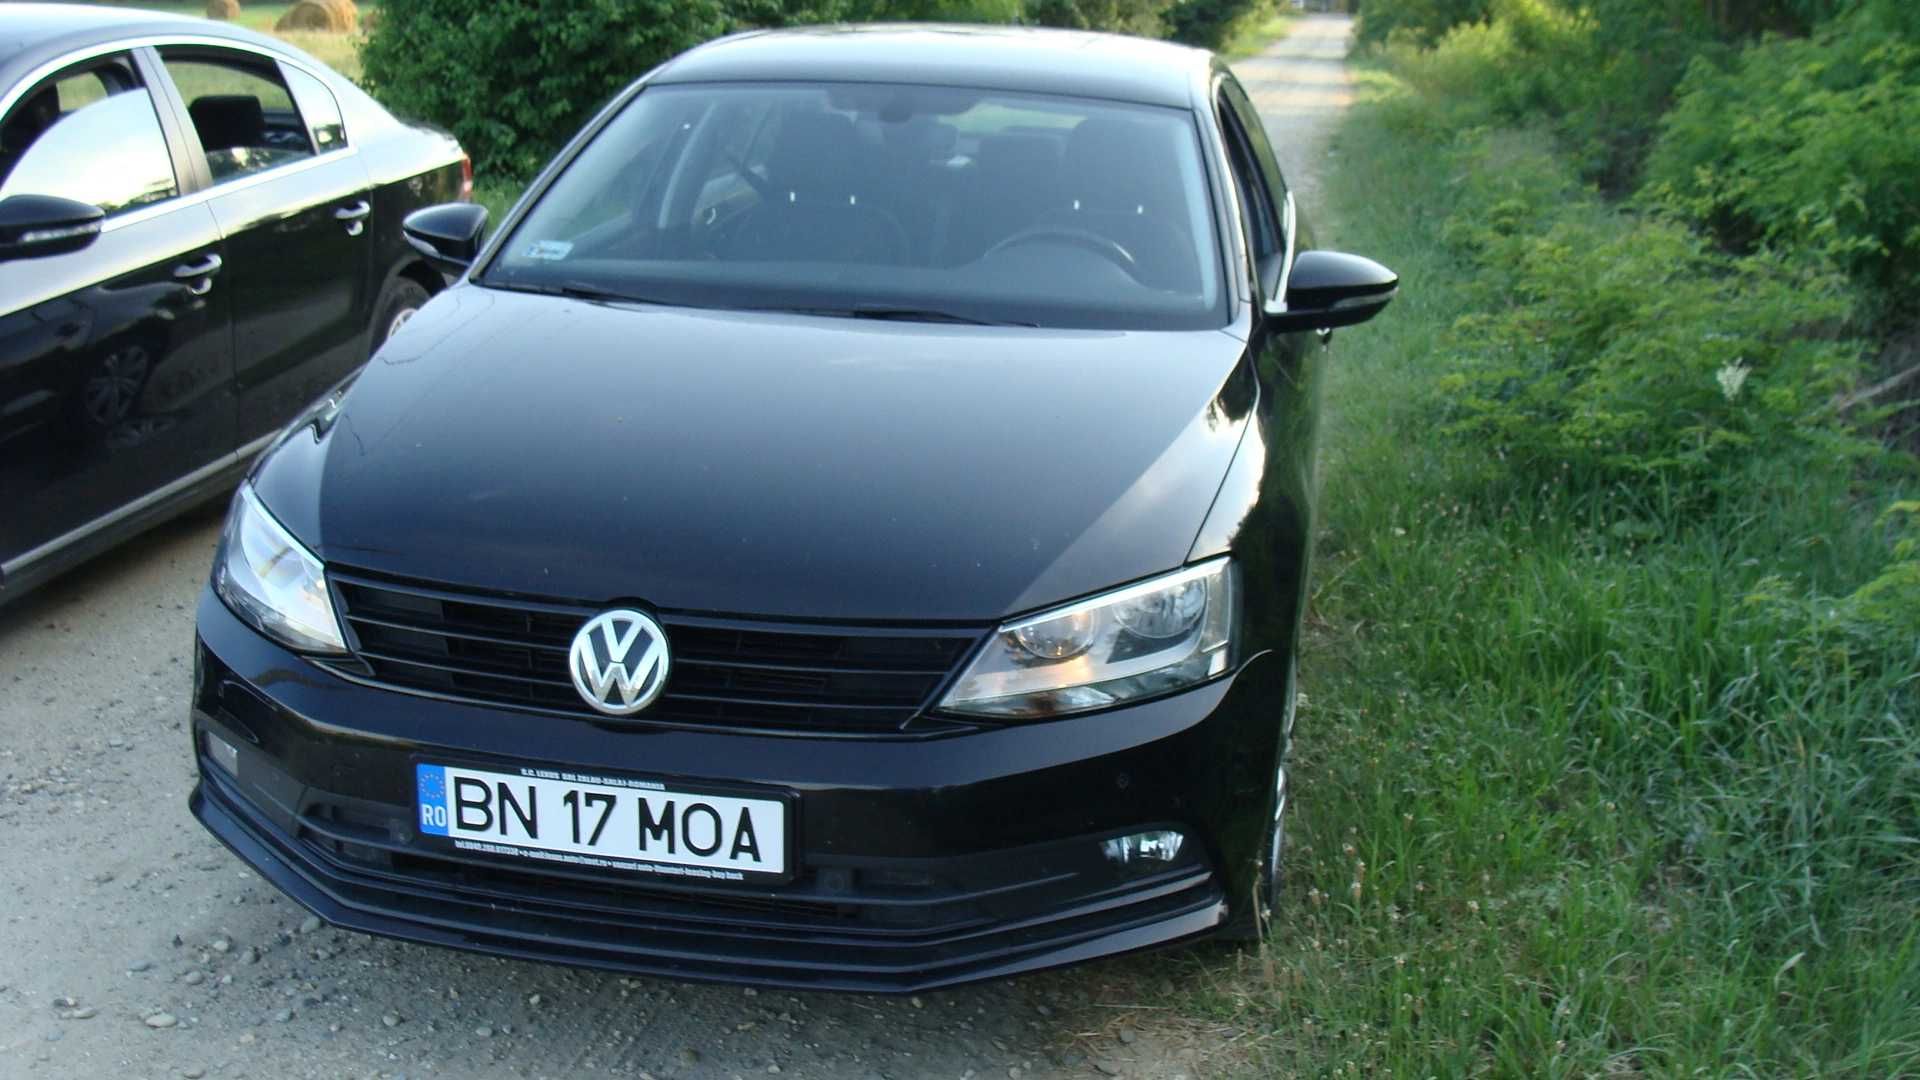 Inchirieri Auto / Rent a Car Cluj Napoca MOA Rent a Car